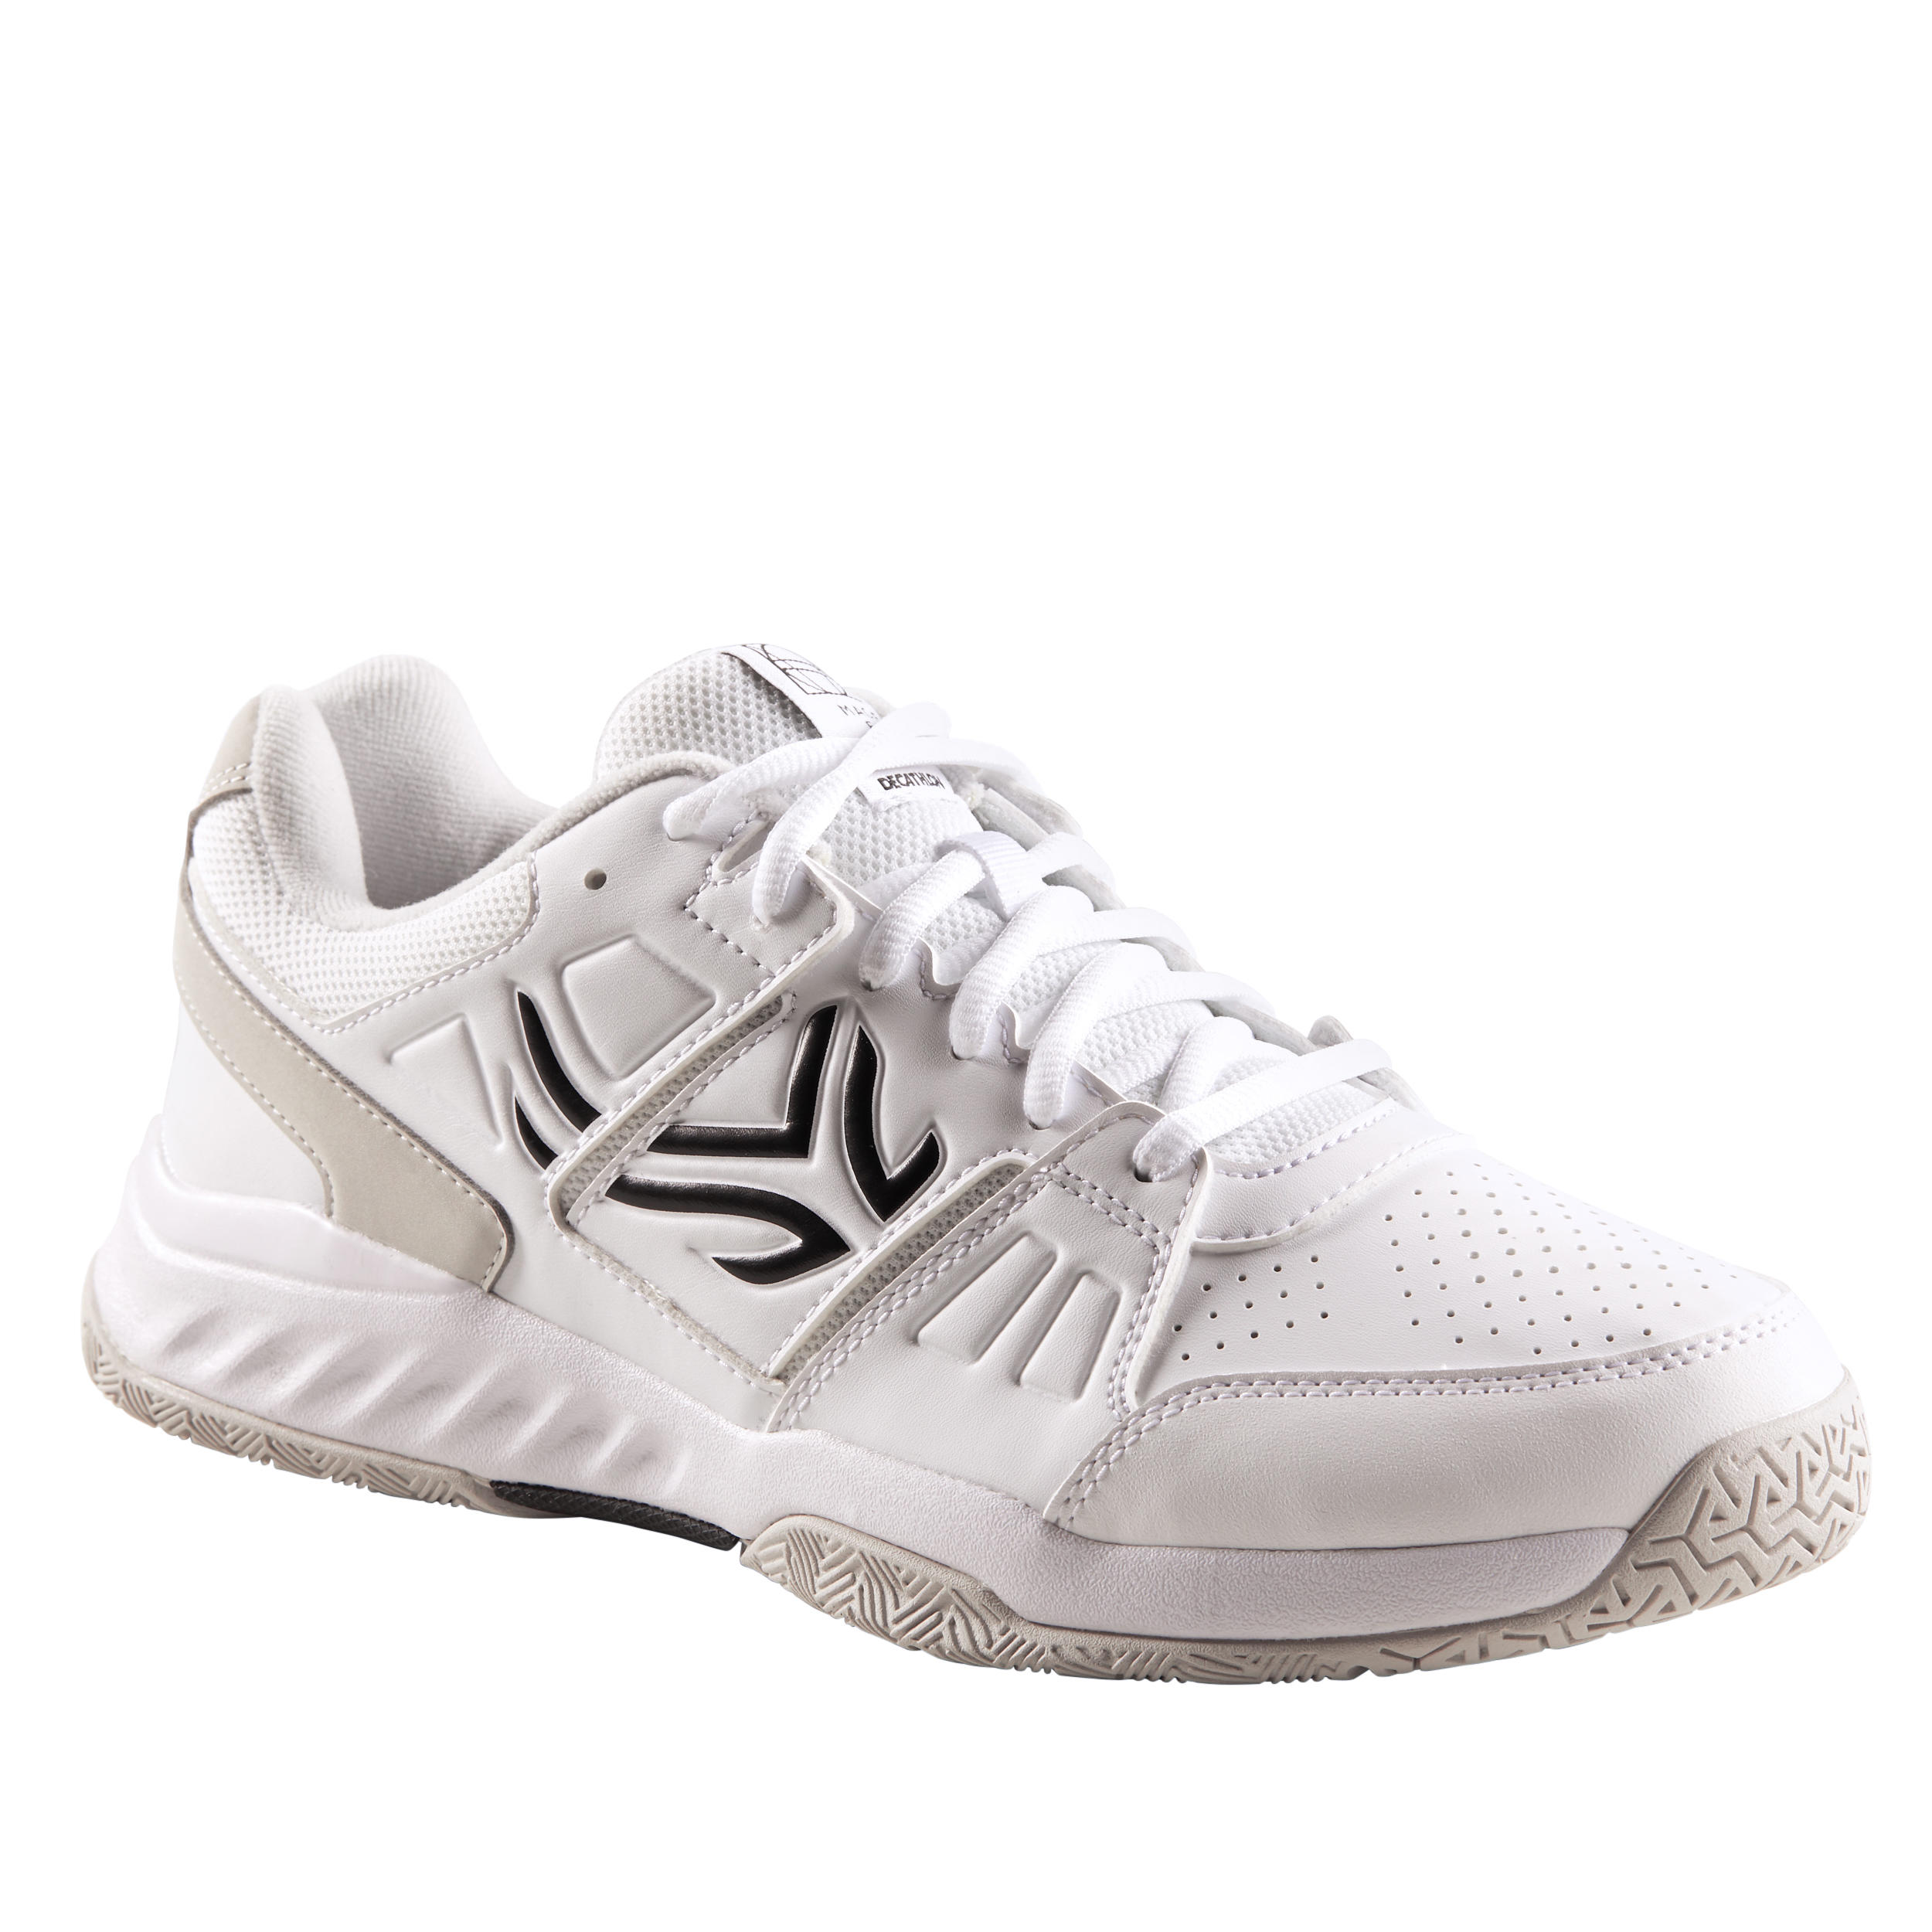 Men's Multi-Court Tennis Shoes TS160 